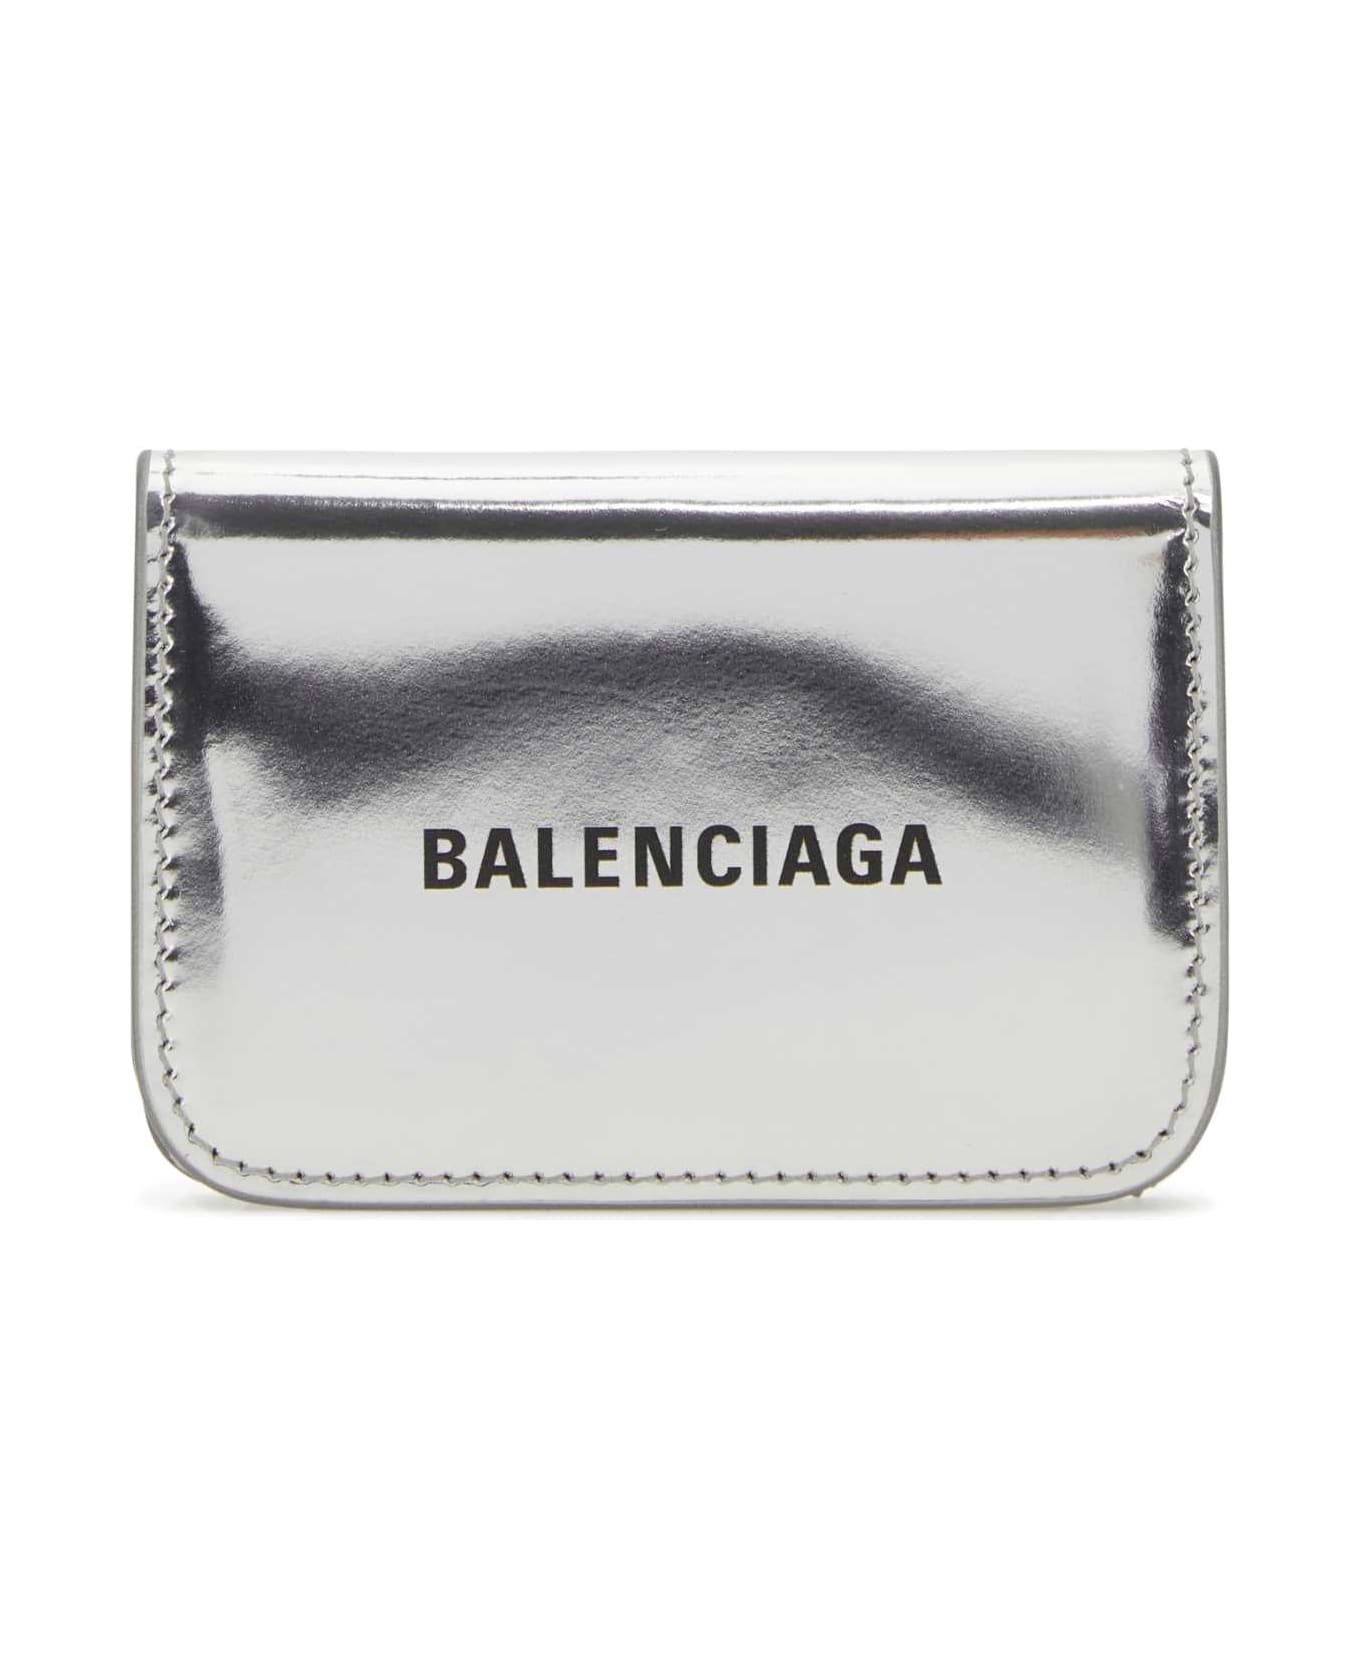 Balenciaga Silver Leather Wallet - 8160 財布